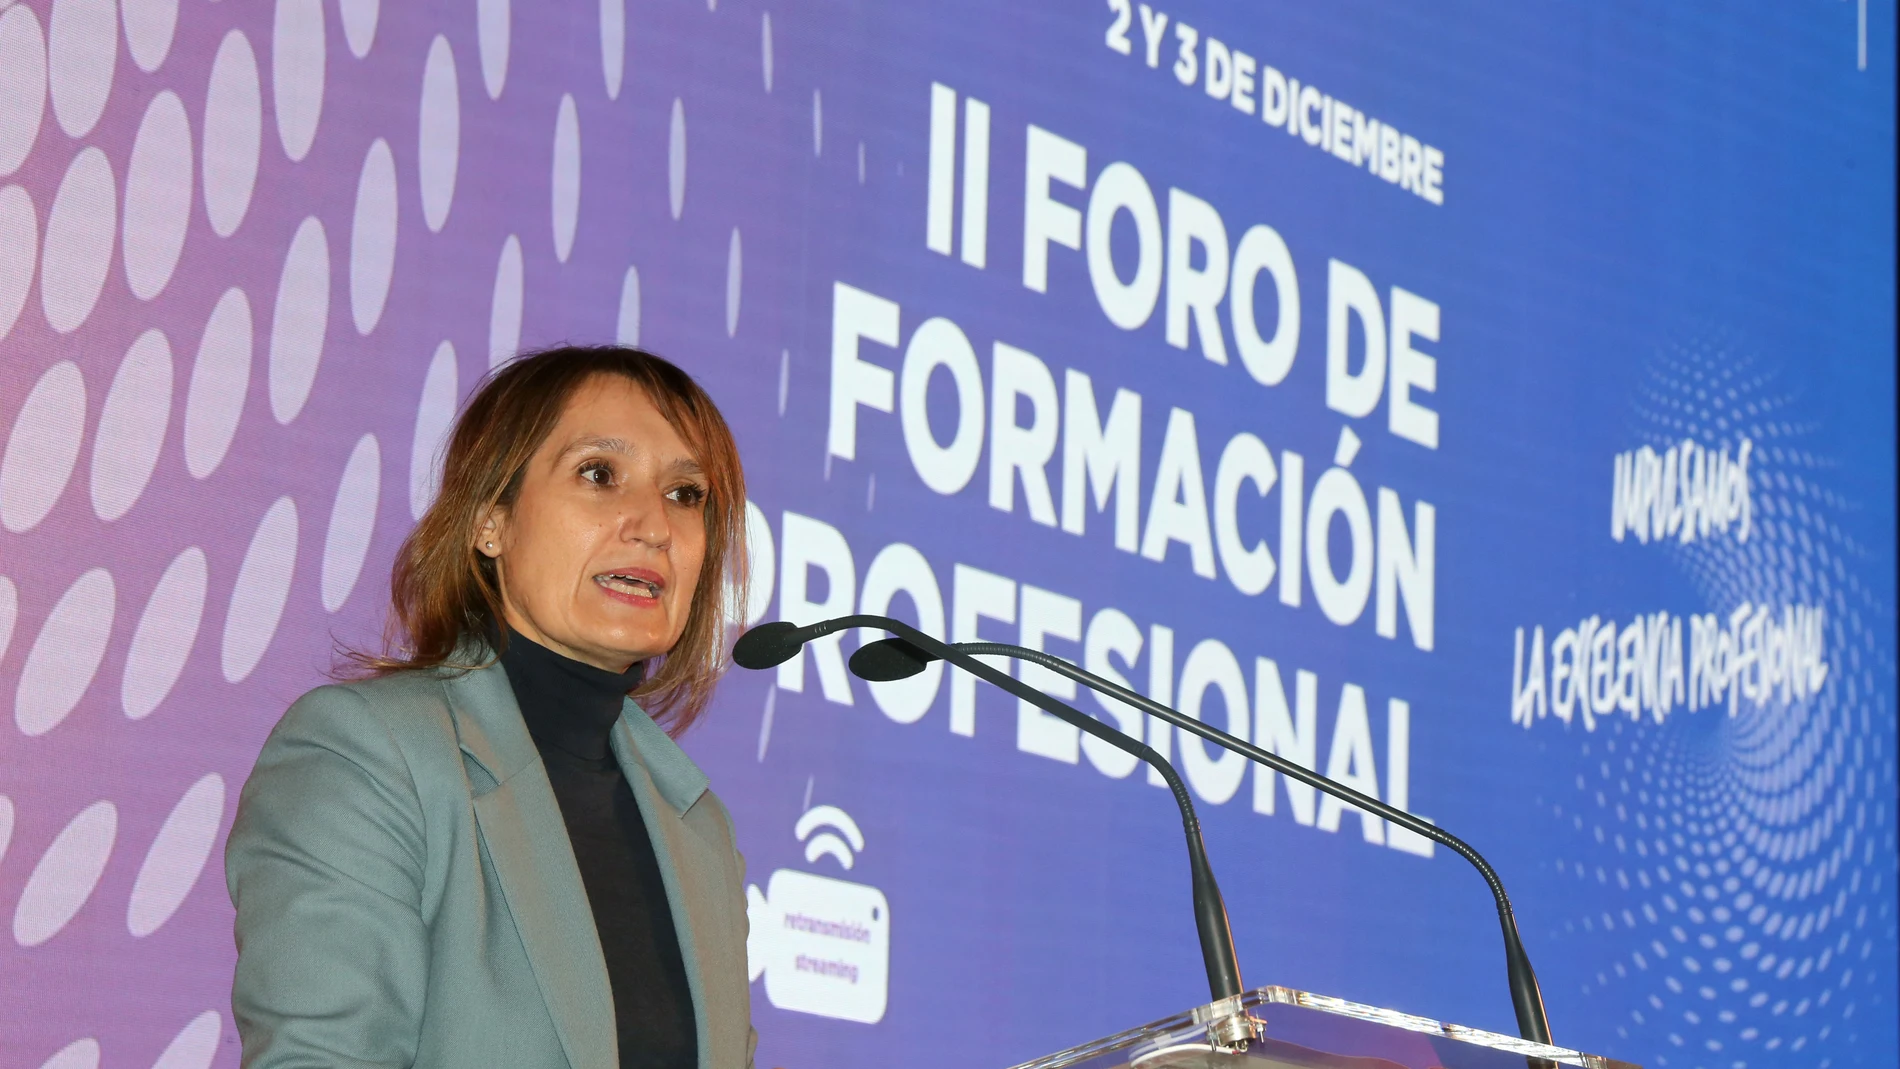 La consejera de Educación, Rocío Lucas, inaugura el II Foro de Formación Profesional